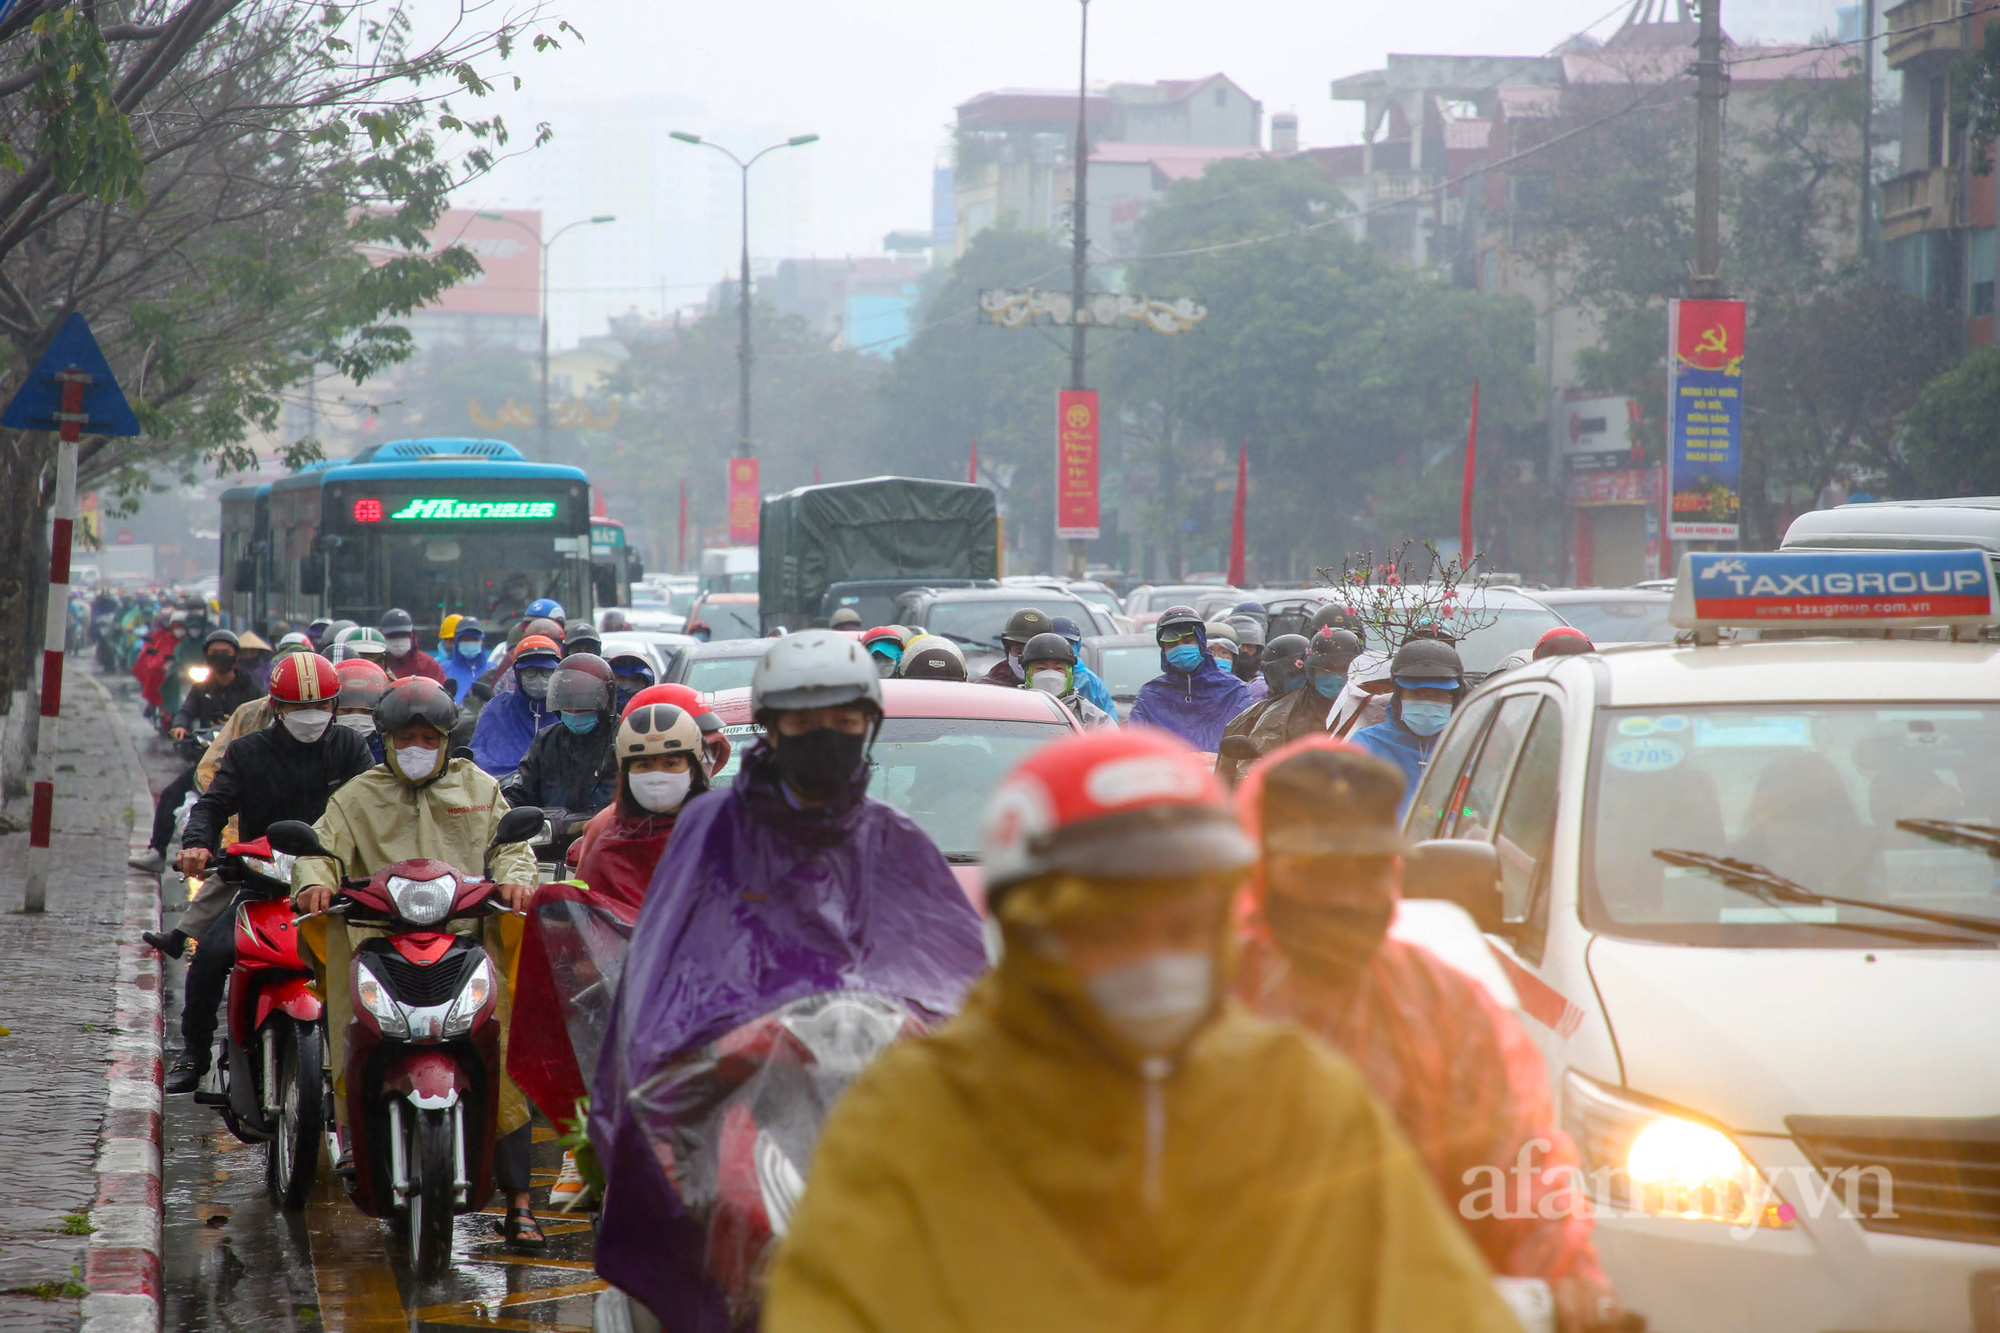 Hà Nội: Hàng nghìn người chạy xe máy trùm kín áo mưa, ùn ùn rời phố về quê ăn Tết - Ảnh 14.